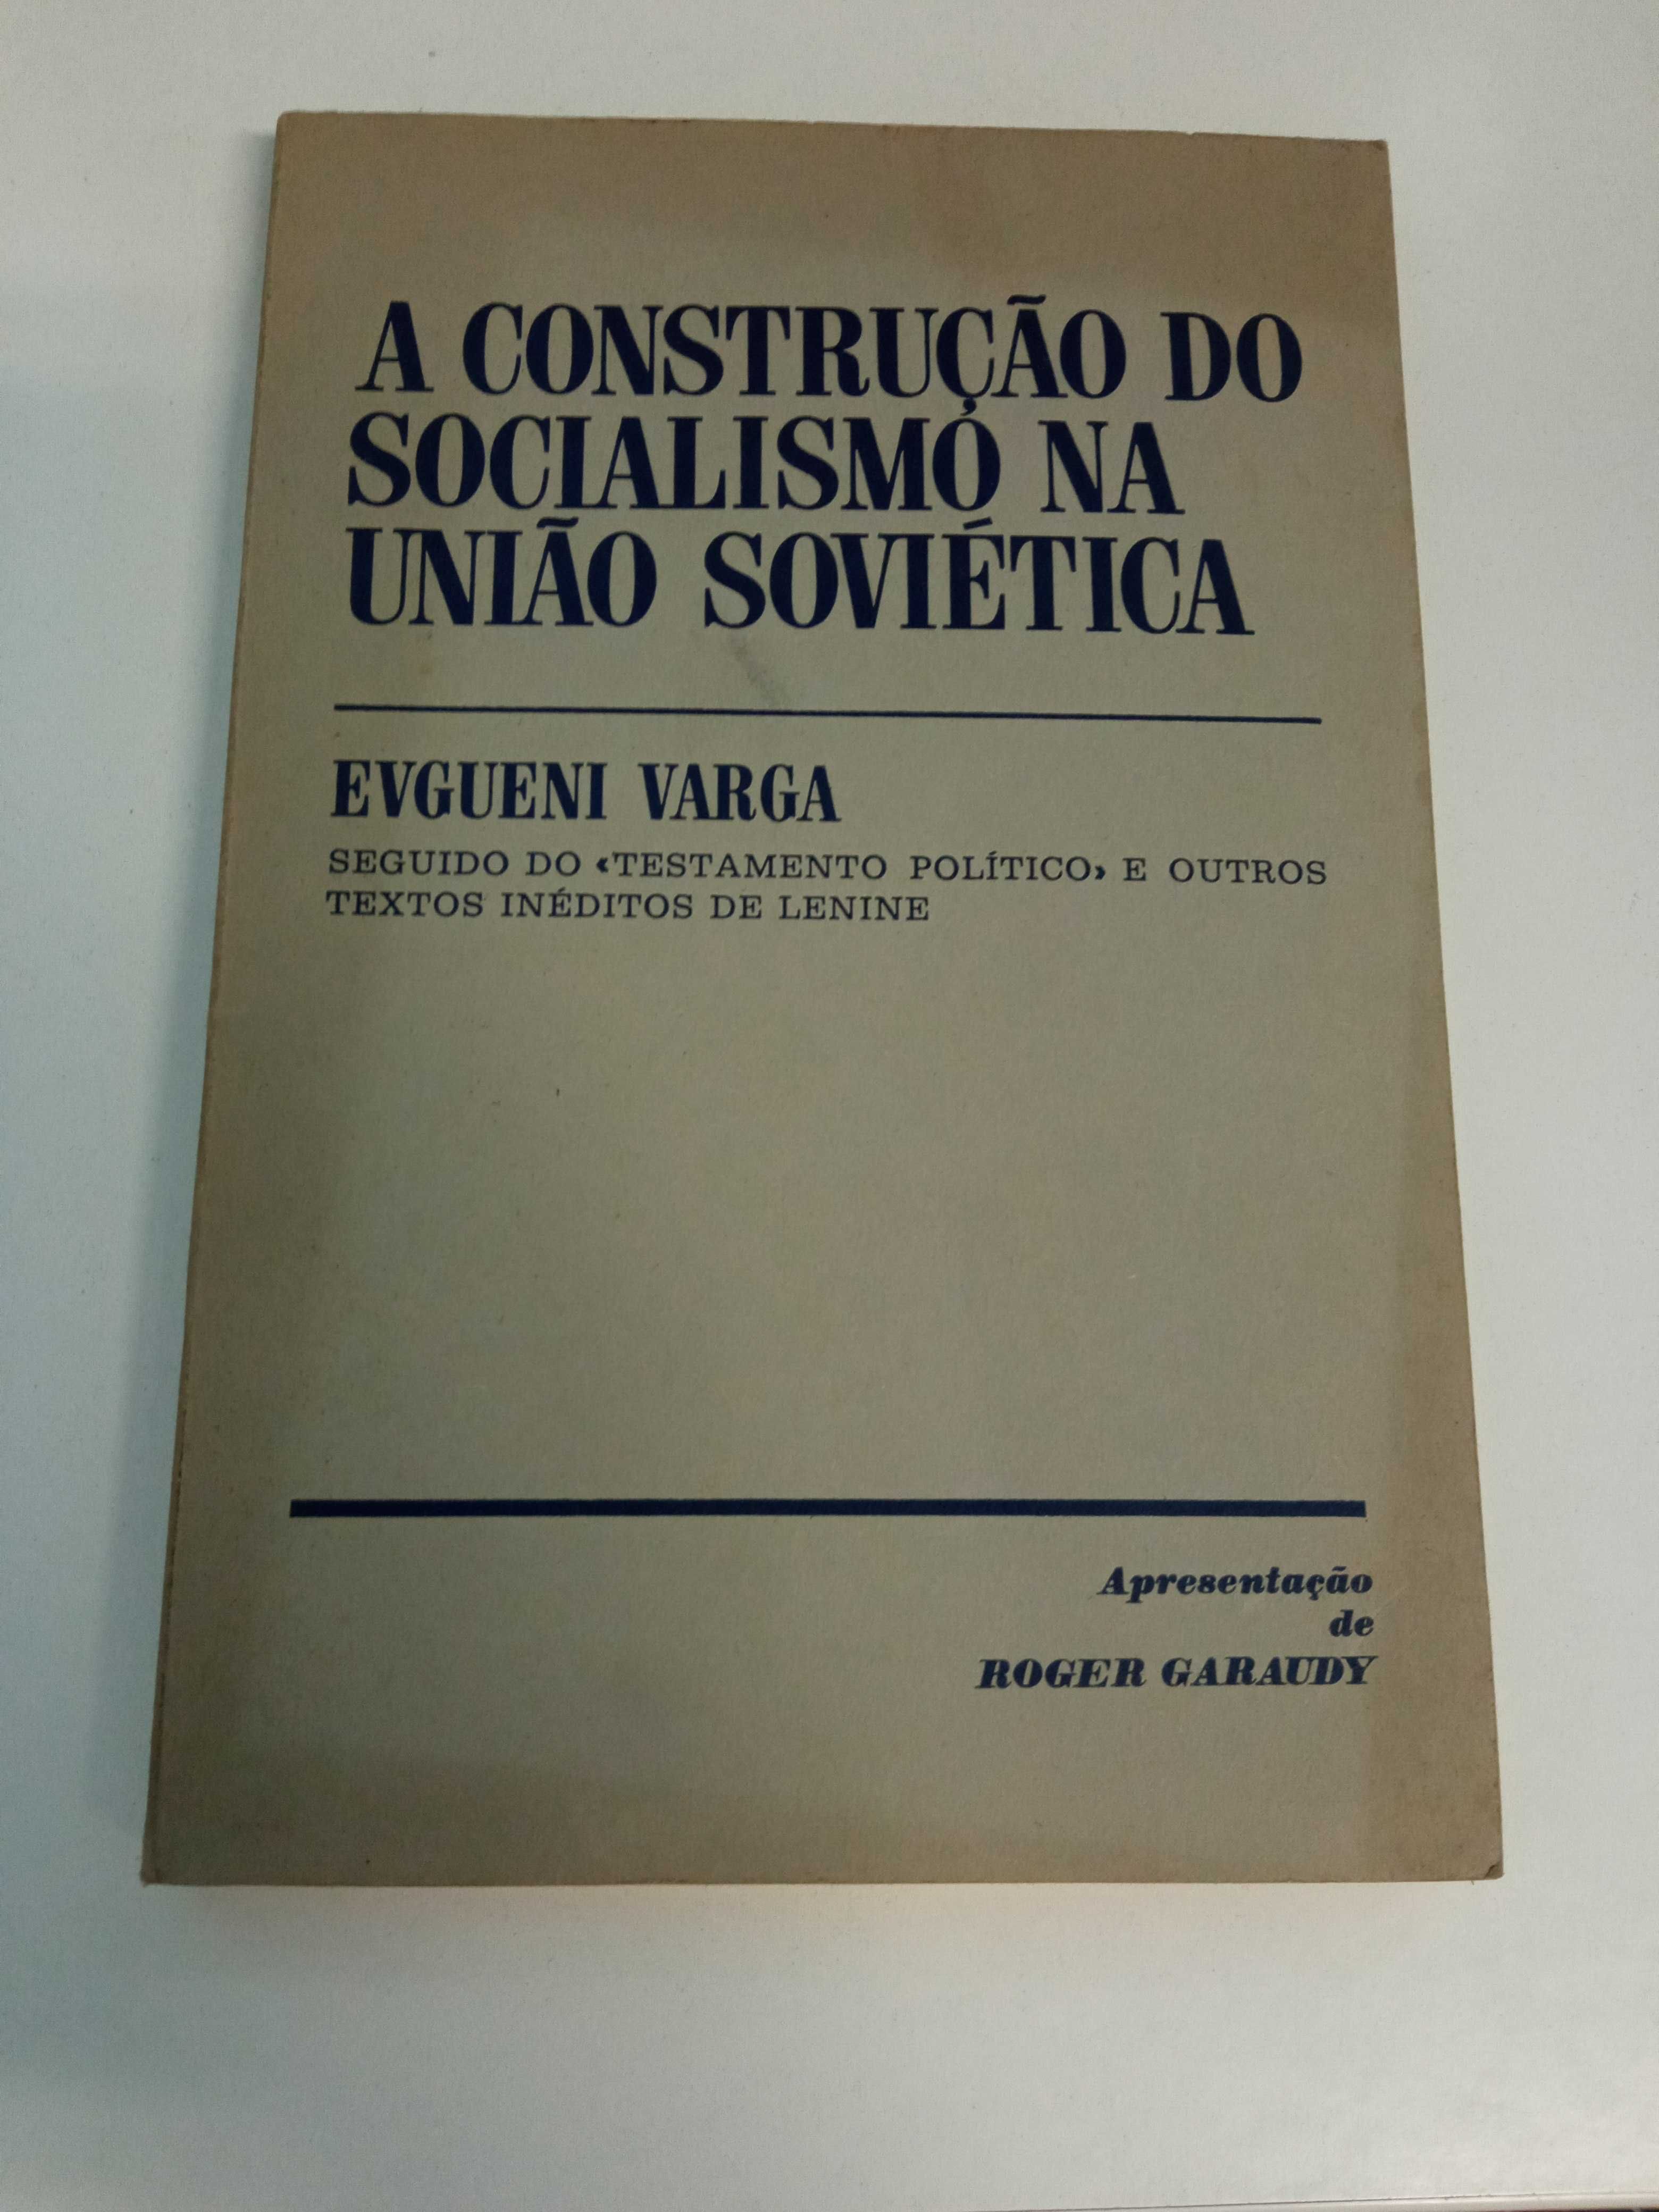 A Construção do Socialismo na União Soviética, de Evgueni Varga